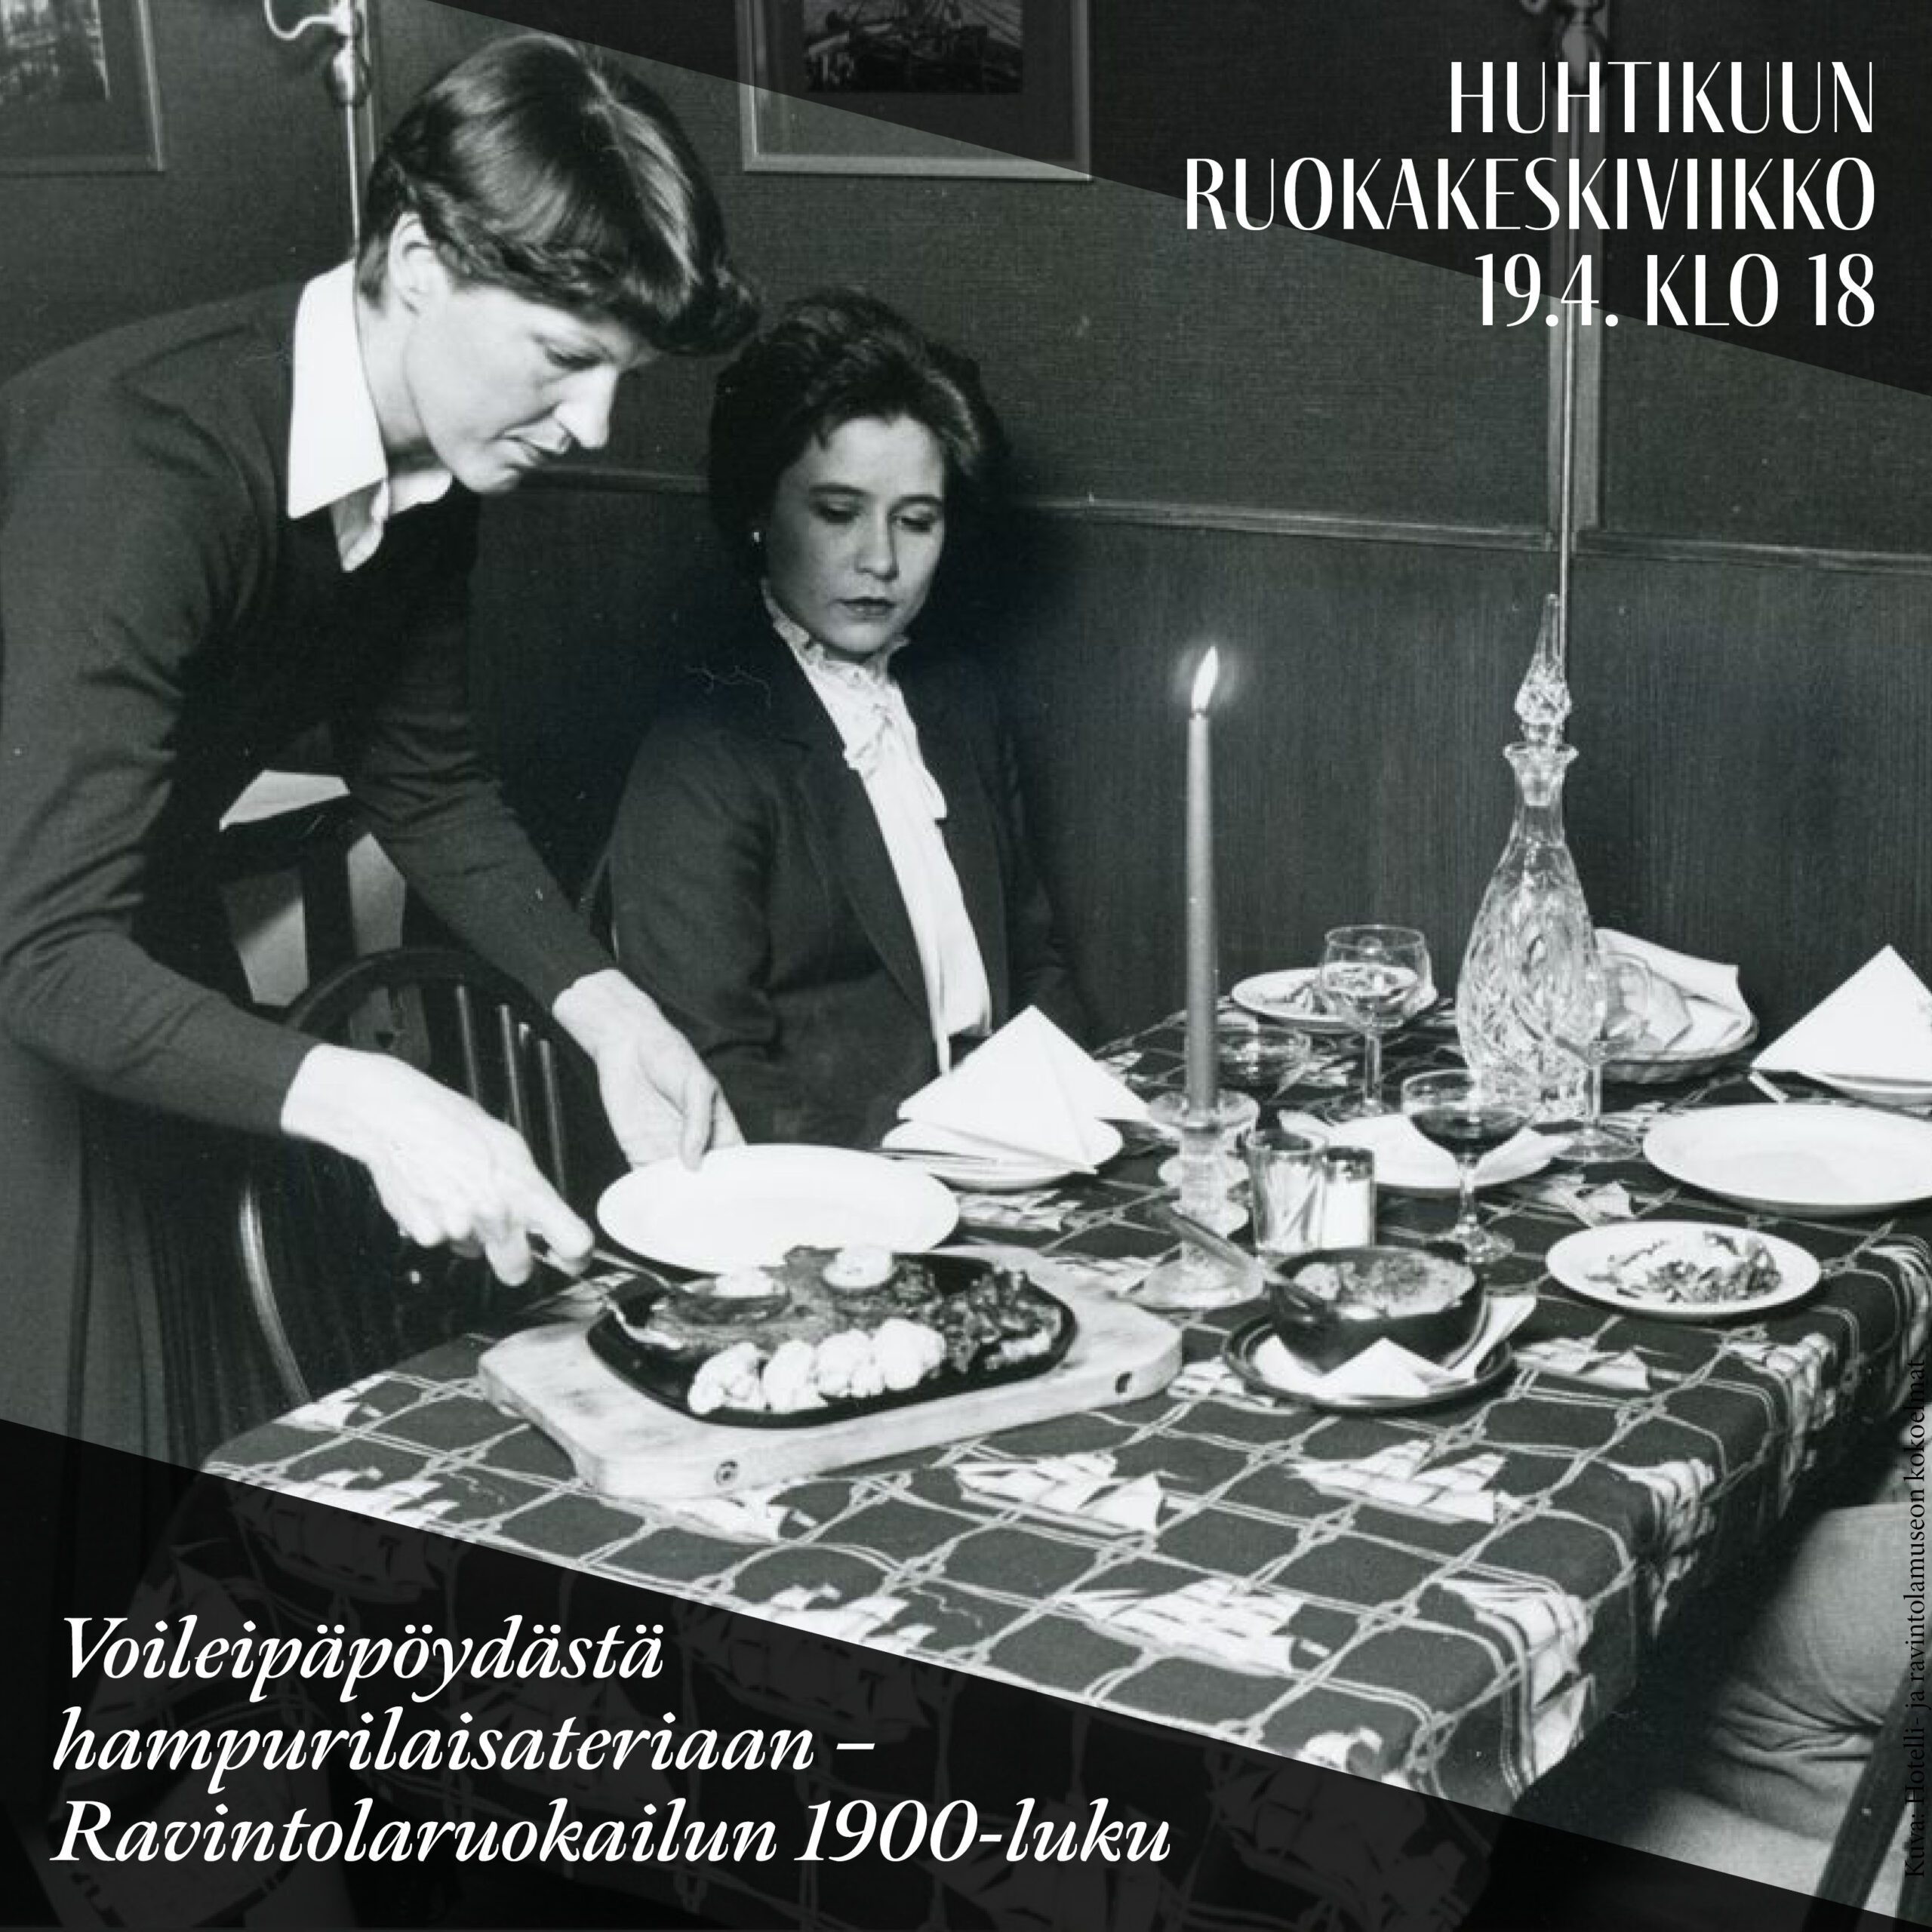 Huhtikuun Ruokakeskiviikko: Voileipäpöydästä hampurilaisateriaan – Ravintolaruokailun 1900-luku